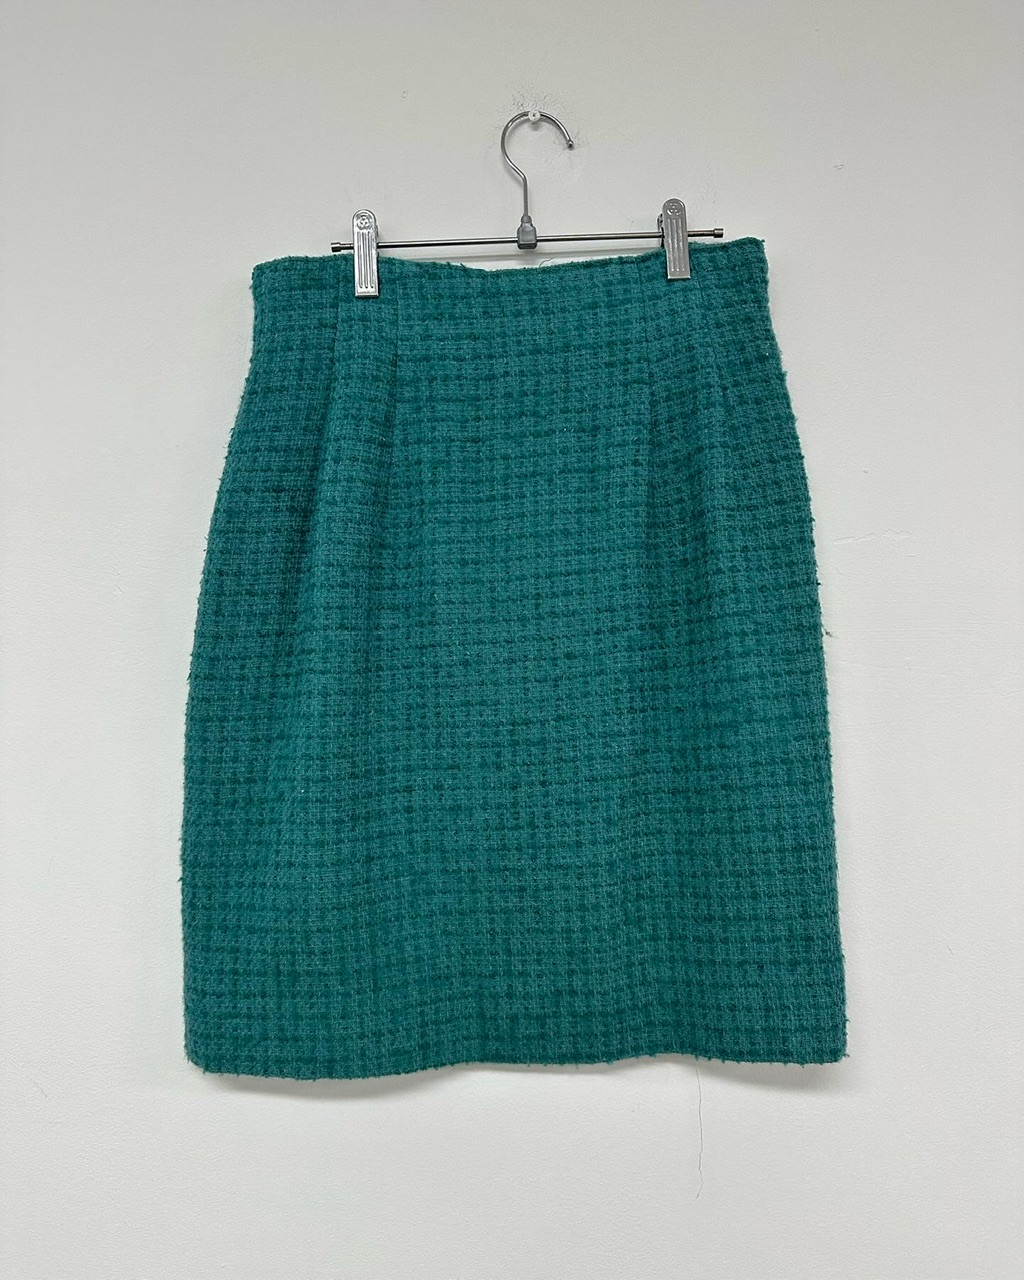 Green tweed skirt